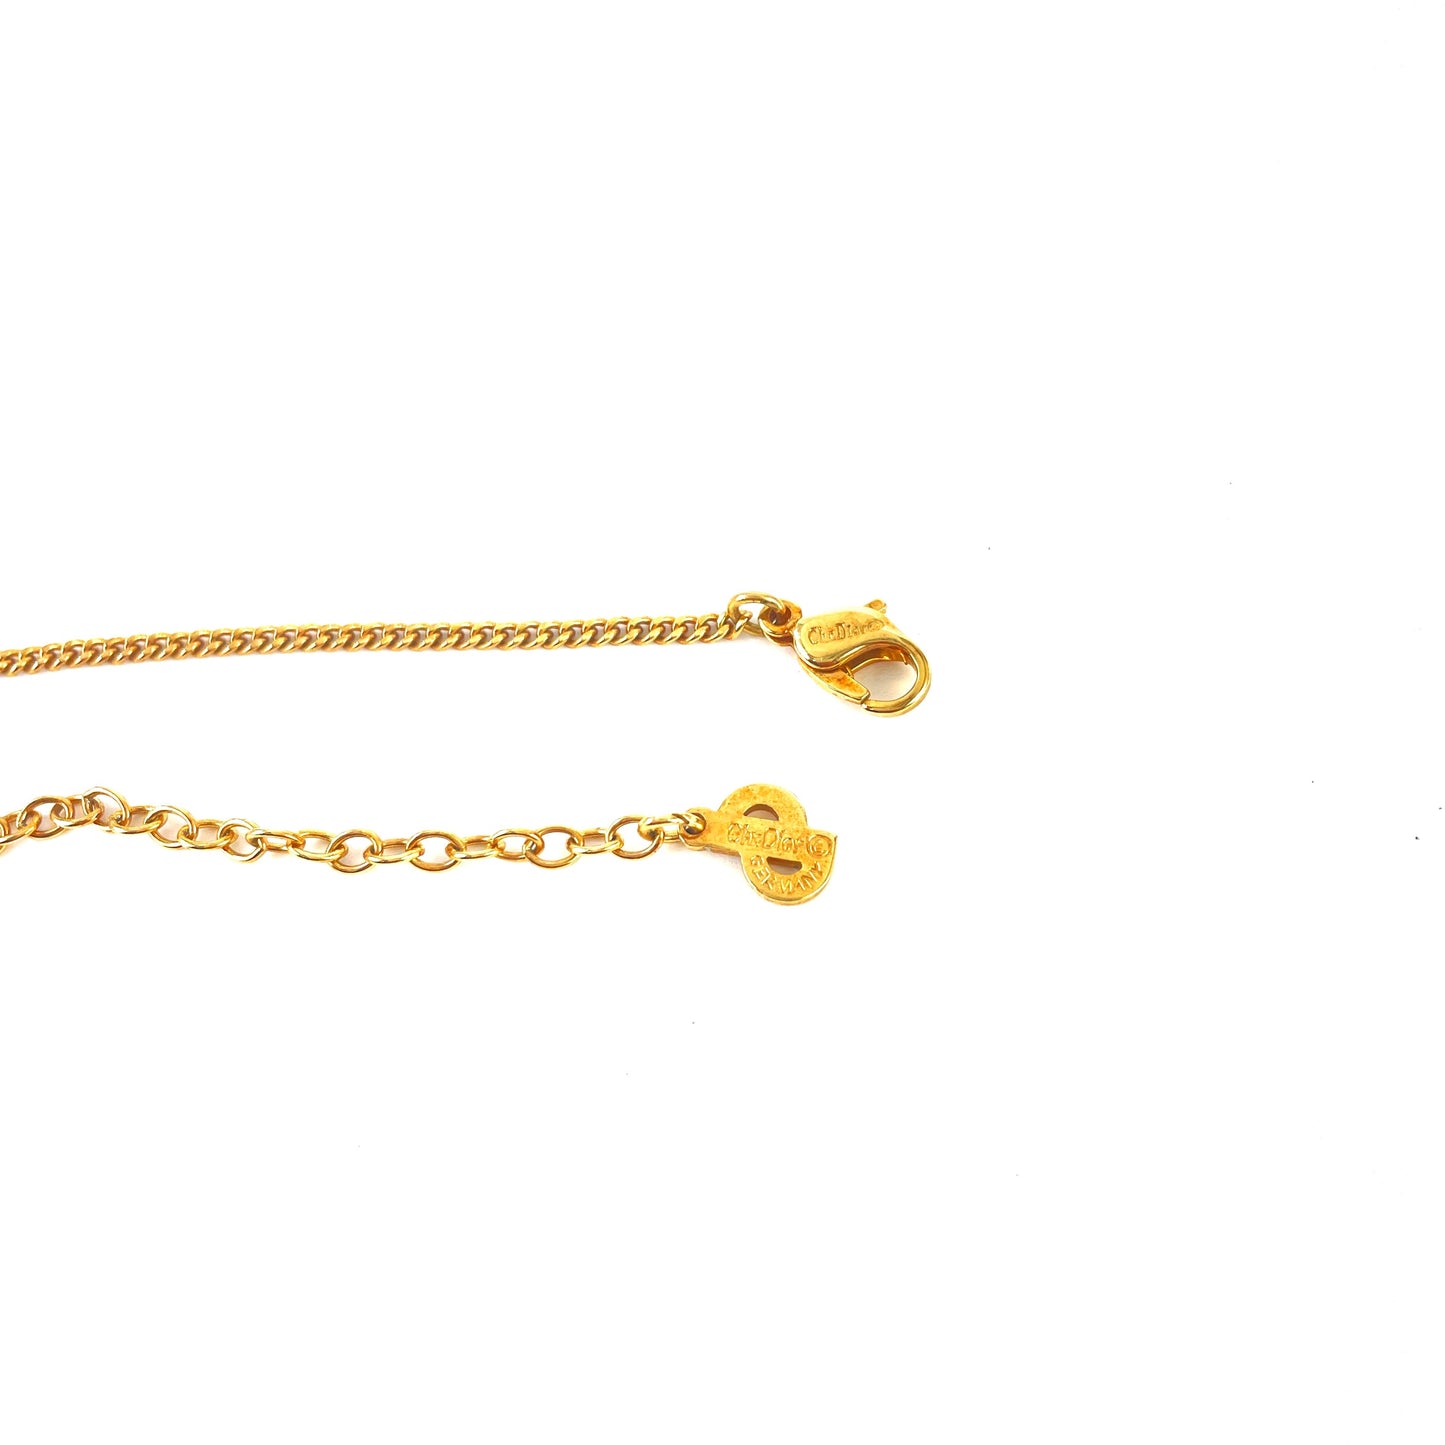 Christian Dior Logo Stone Necklace Gold Vintage Old jck57y